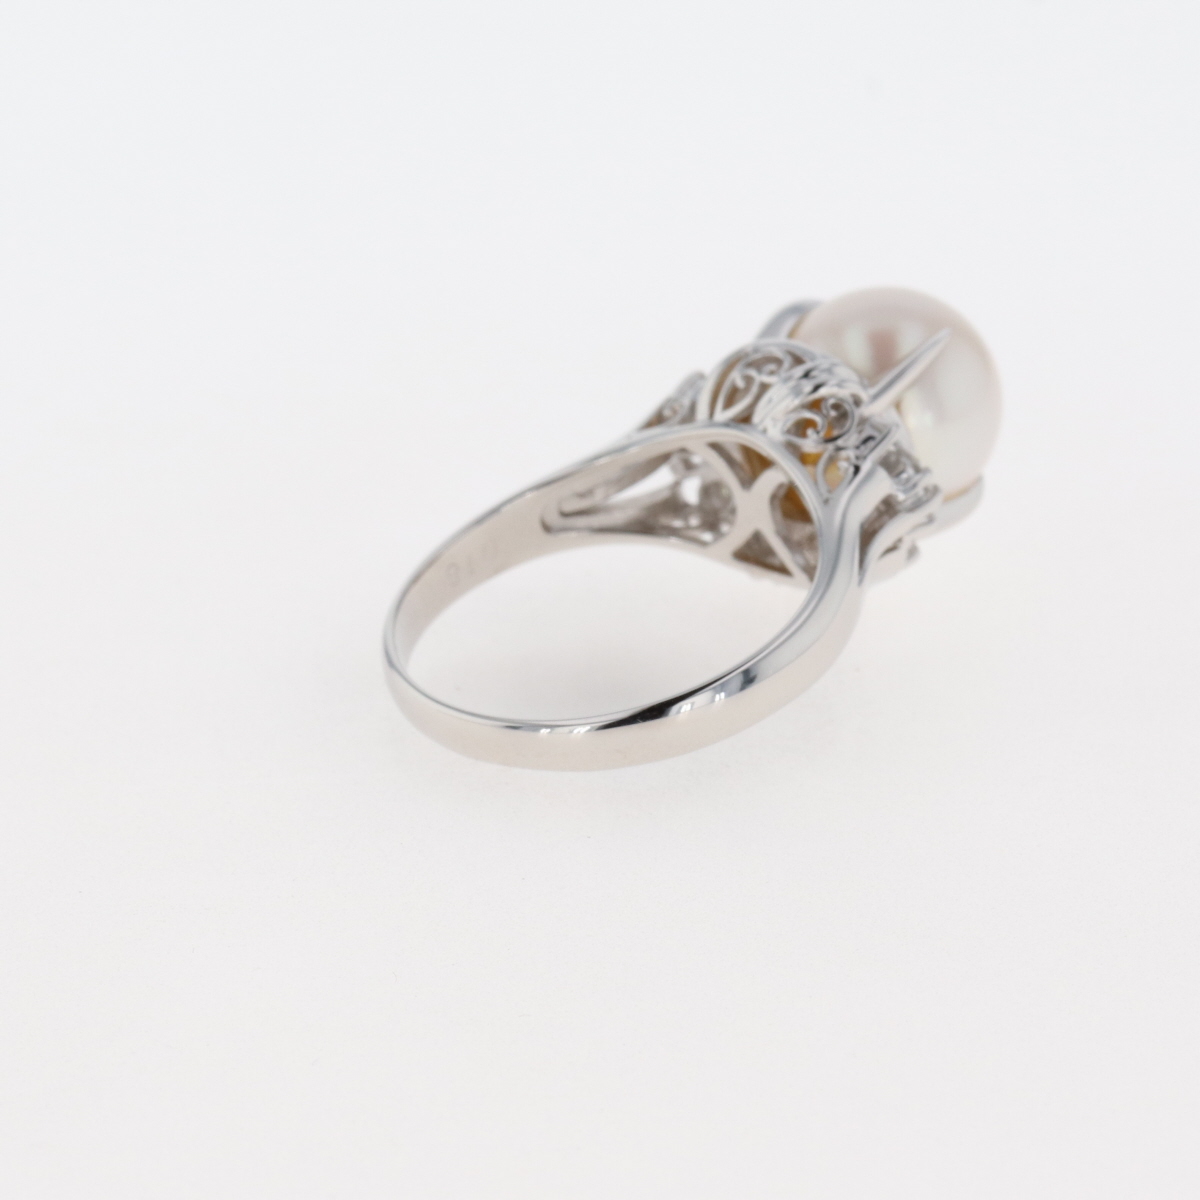 【しておりま】 パール デザインリング プラチナ 指輪 メレダイヤ 真珠 リング 10号 Pt900 パール ダイヤモンド レディース ：バイセル 店 メレダイヤ